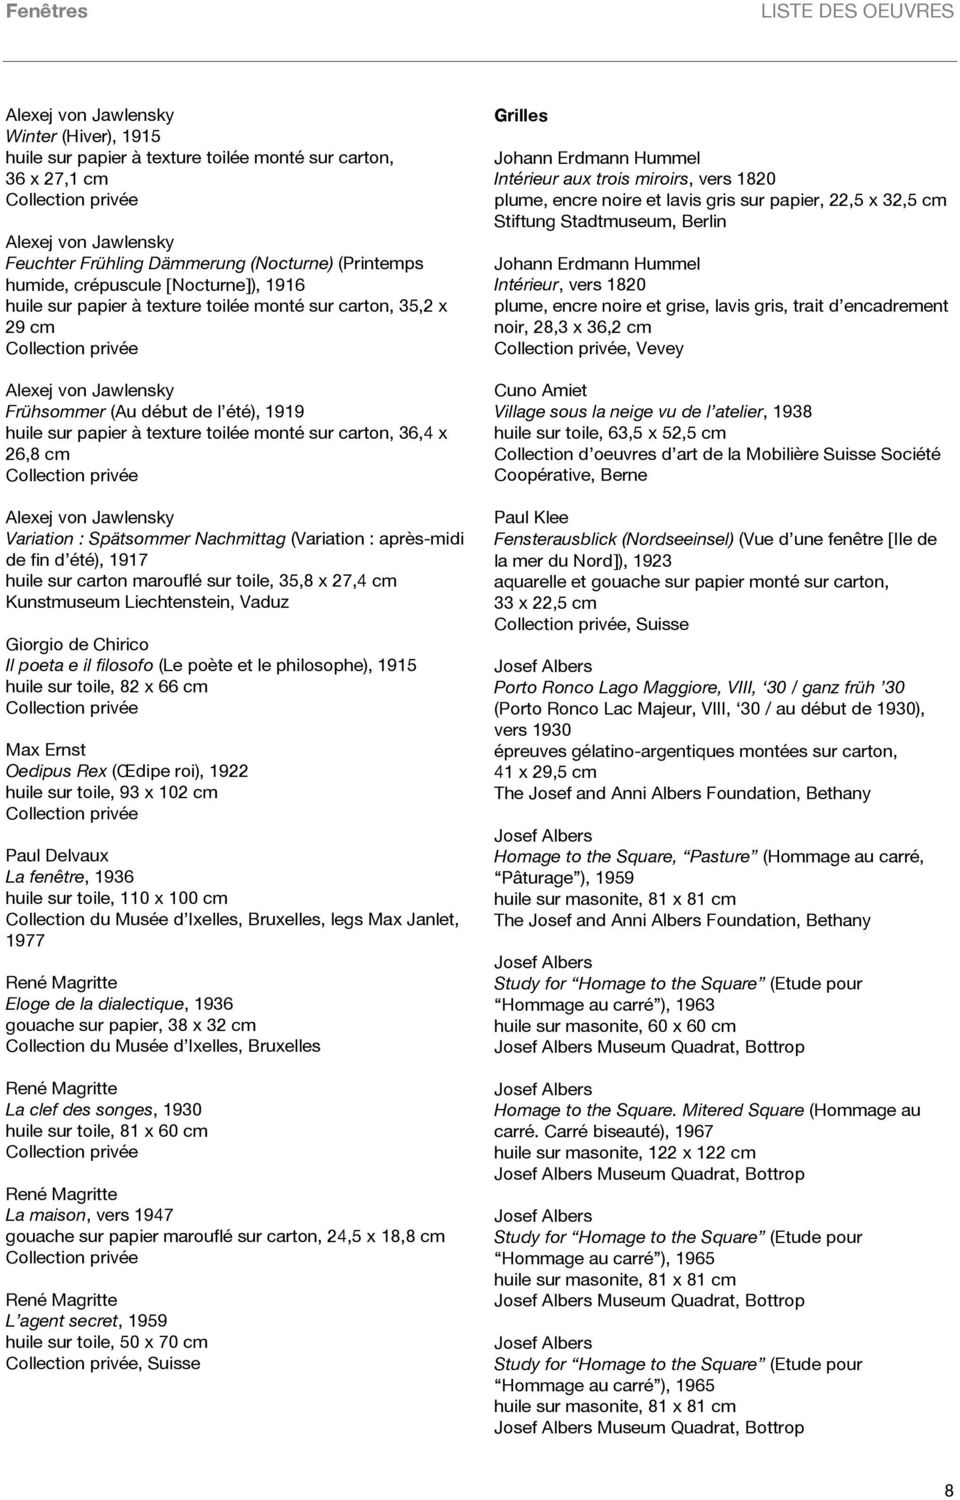 sur carton, 36,4 x 26,8 cm Alexej von Jawlensky Variation : Spätsommer Nachmittag (Variation : après-midi de fin d été), 1917 huile sur carton marouflé sur toile, 35,8 x 27,4 cm Kunstmuseum